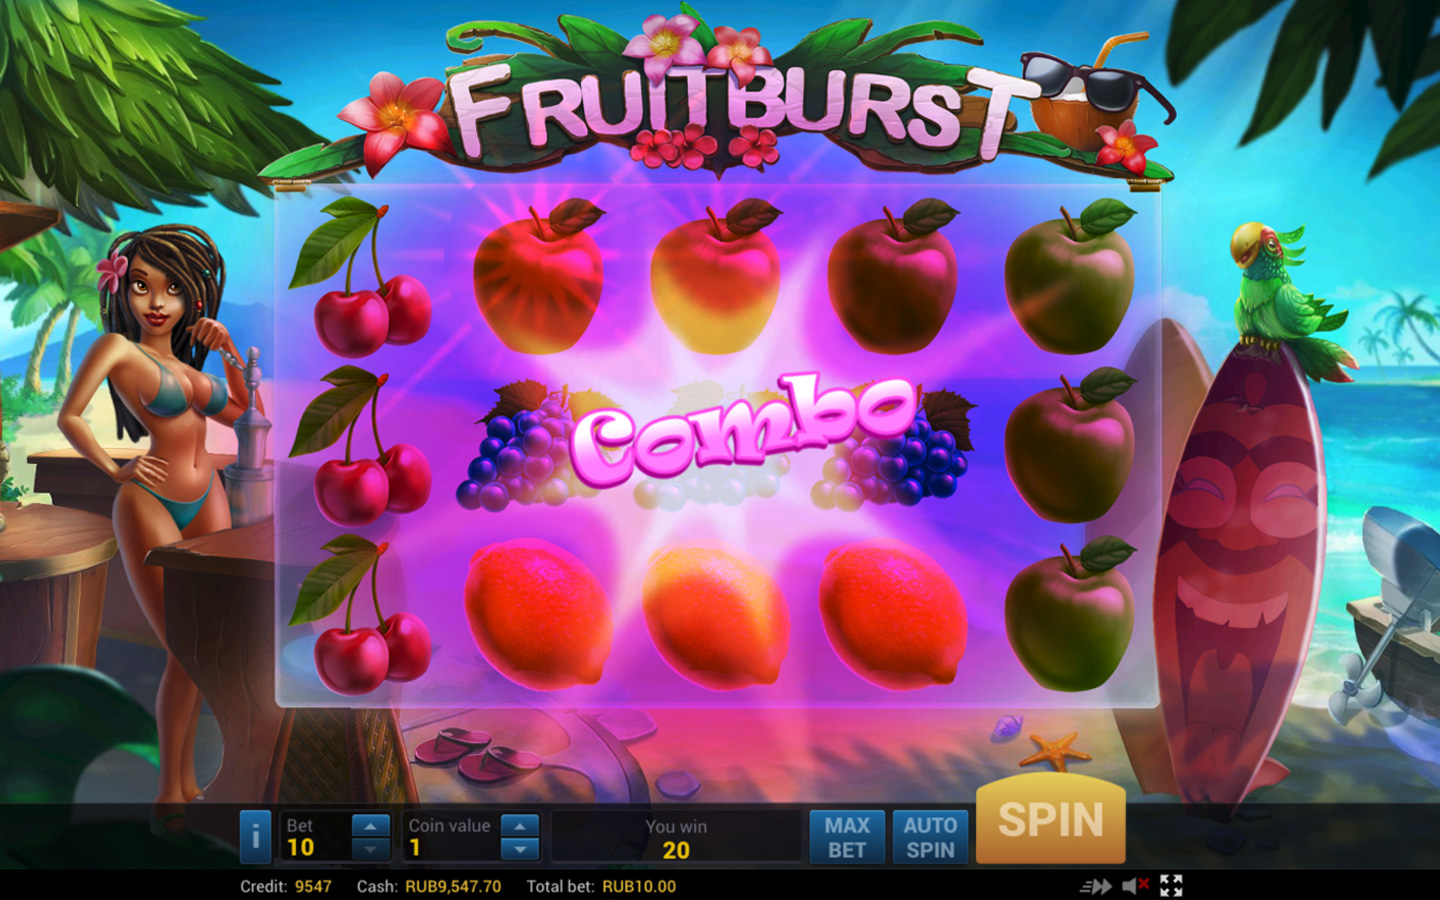 Fruit burst